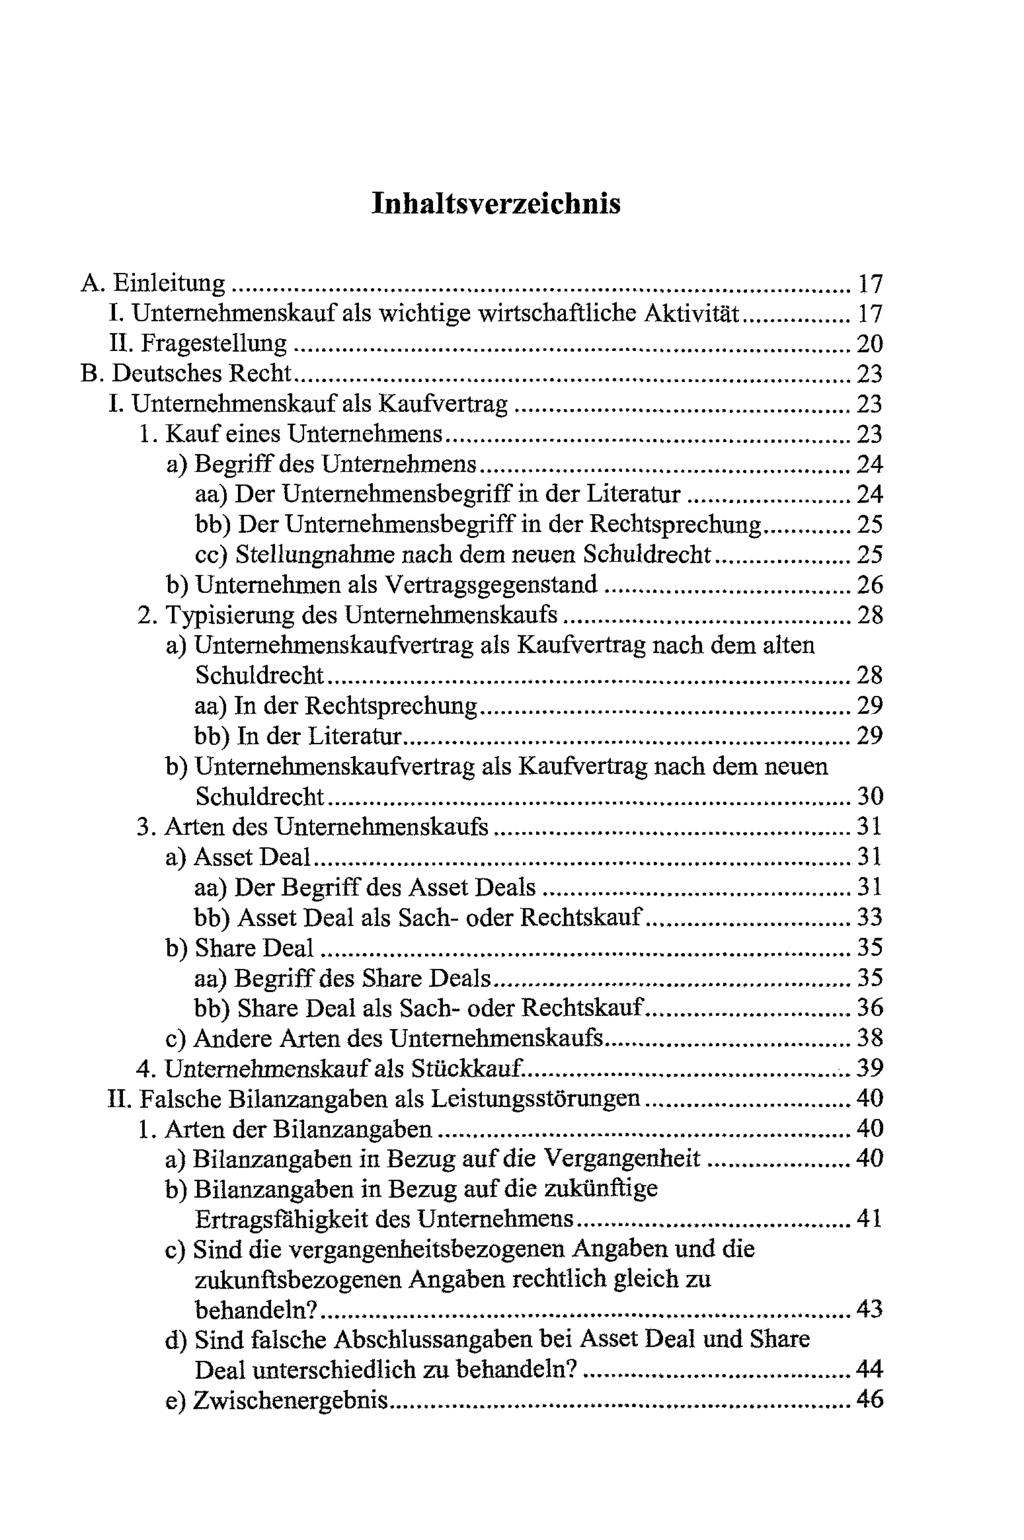 Inhaltsverzeichnis A. Einleitung 17 I. Unternehmenskauf als wichtige wirtschaftliche Aktivität 17 II. Fragestellung 20 B. Deutsches Recht 23 I. Unternehmenskauf als Kaufvertrag 23 1.